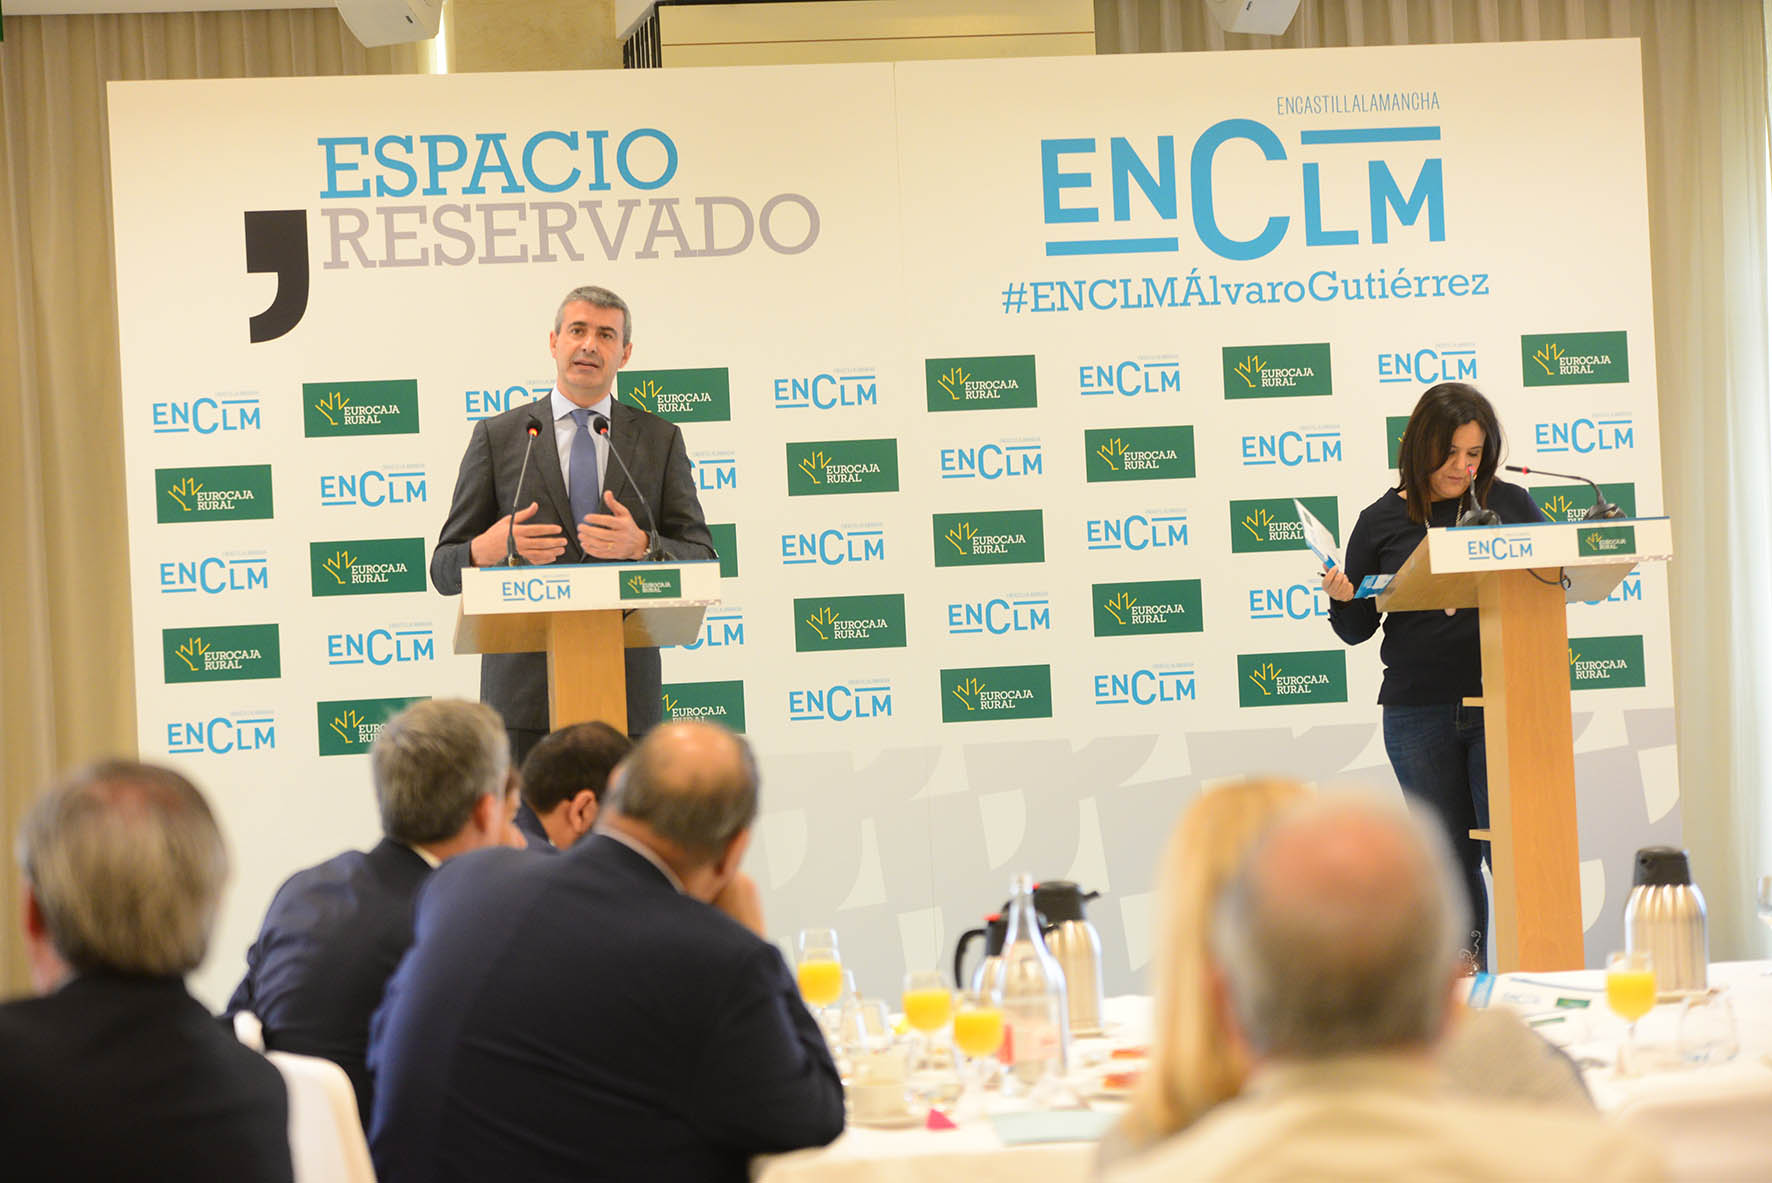 Espacio Reservado con el presidente de la Diputación de Toledo. escalona